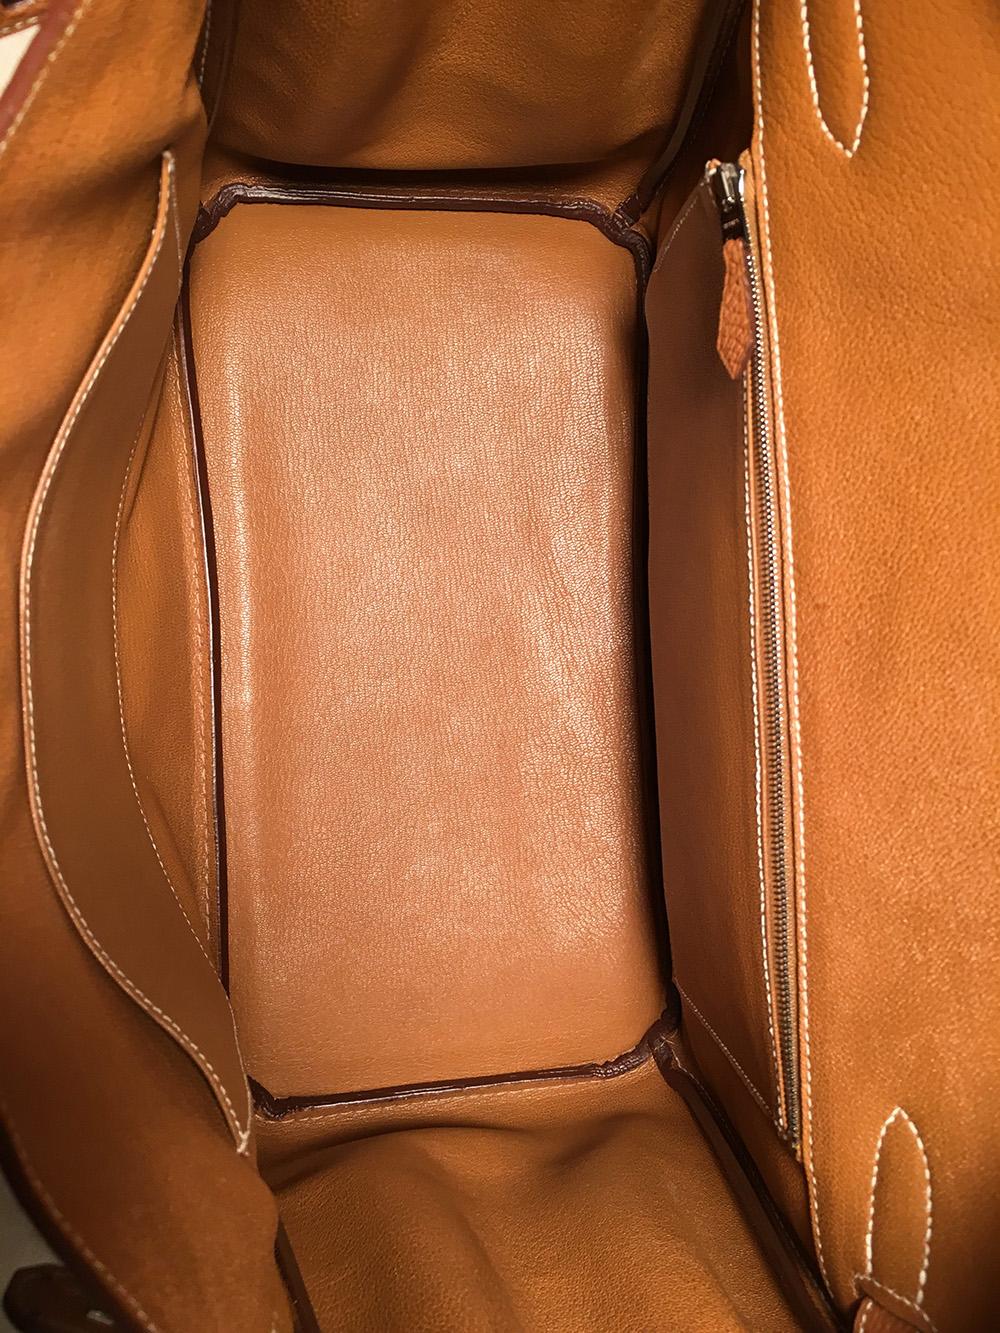 Hermes Natural Tan Togo Leather 35 cm Birkin Bag  2